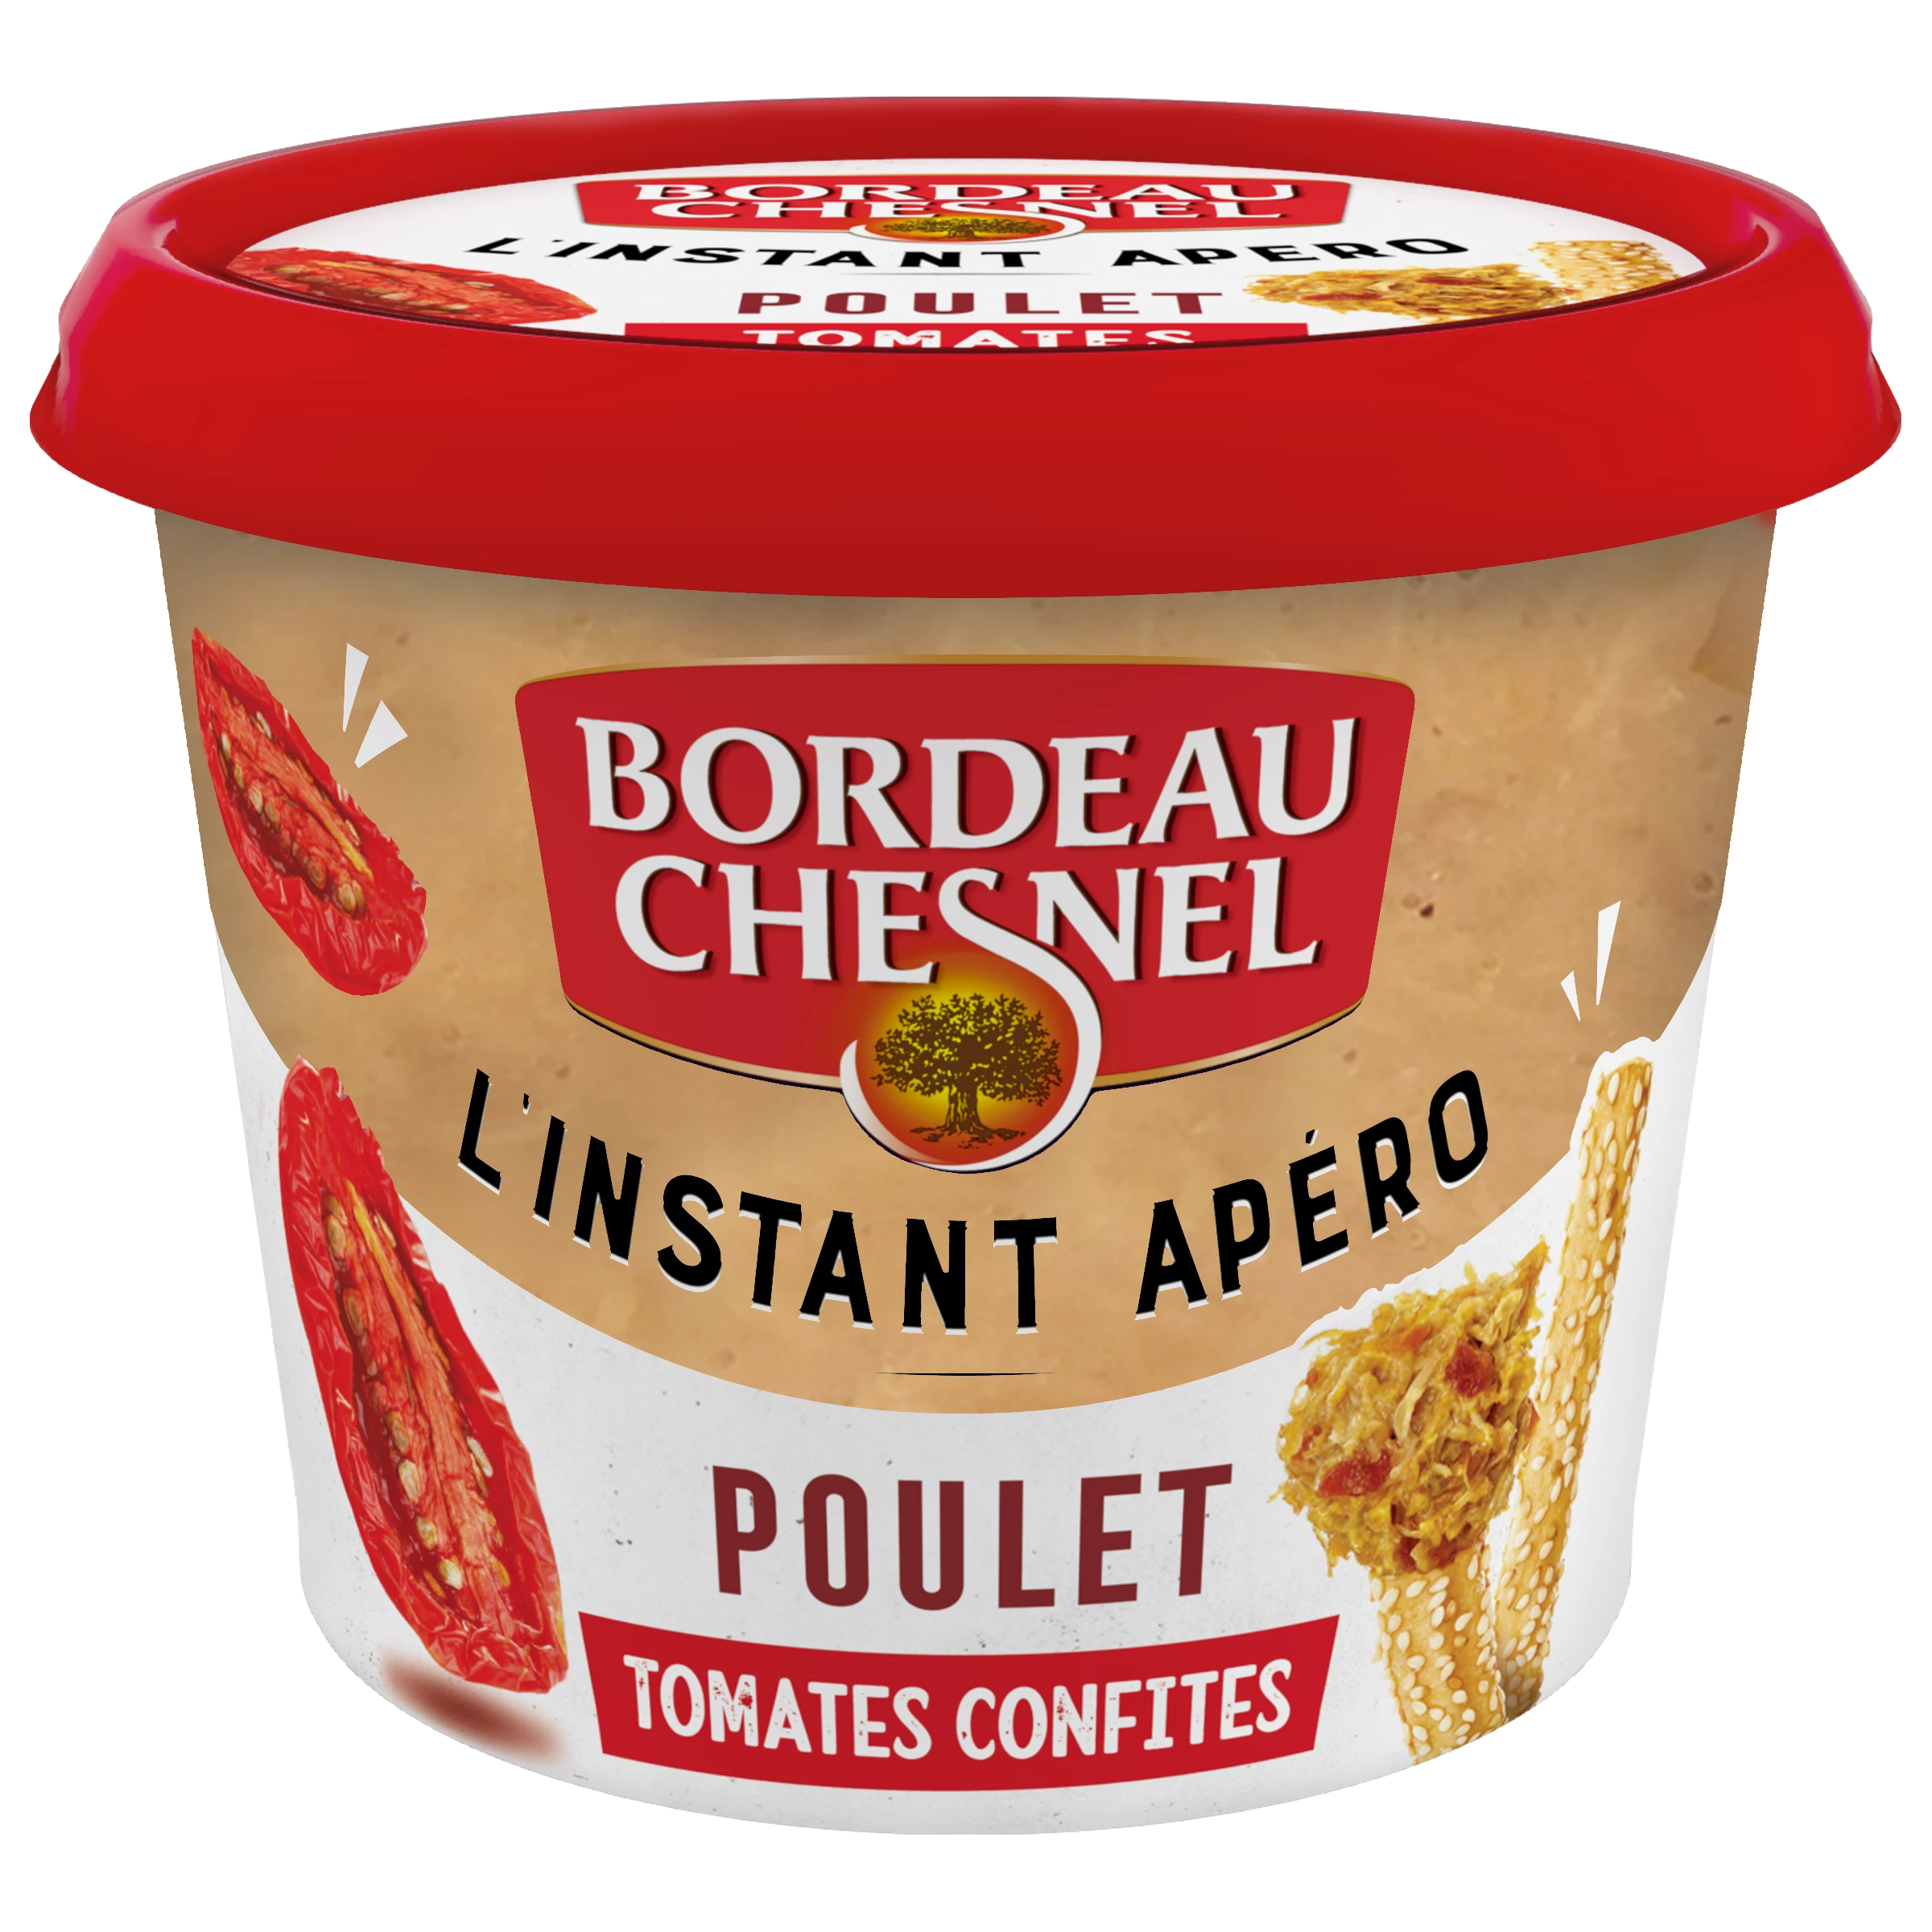 Rillettes de Poulet aux Tomates Confites, 120g - L'INSTANT APERO DE BORDEAU CHESNEL